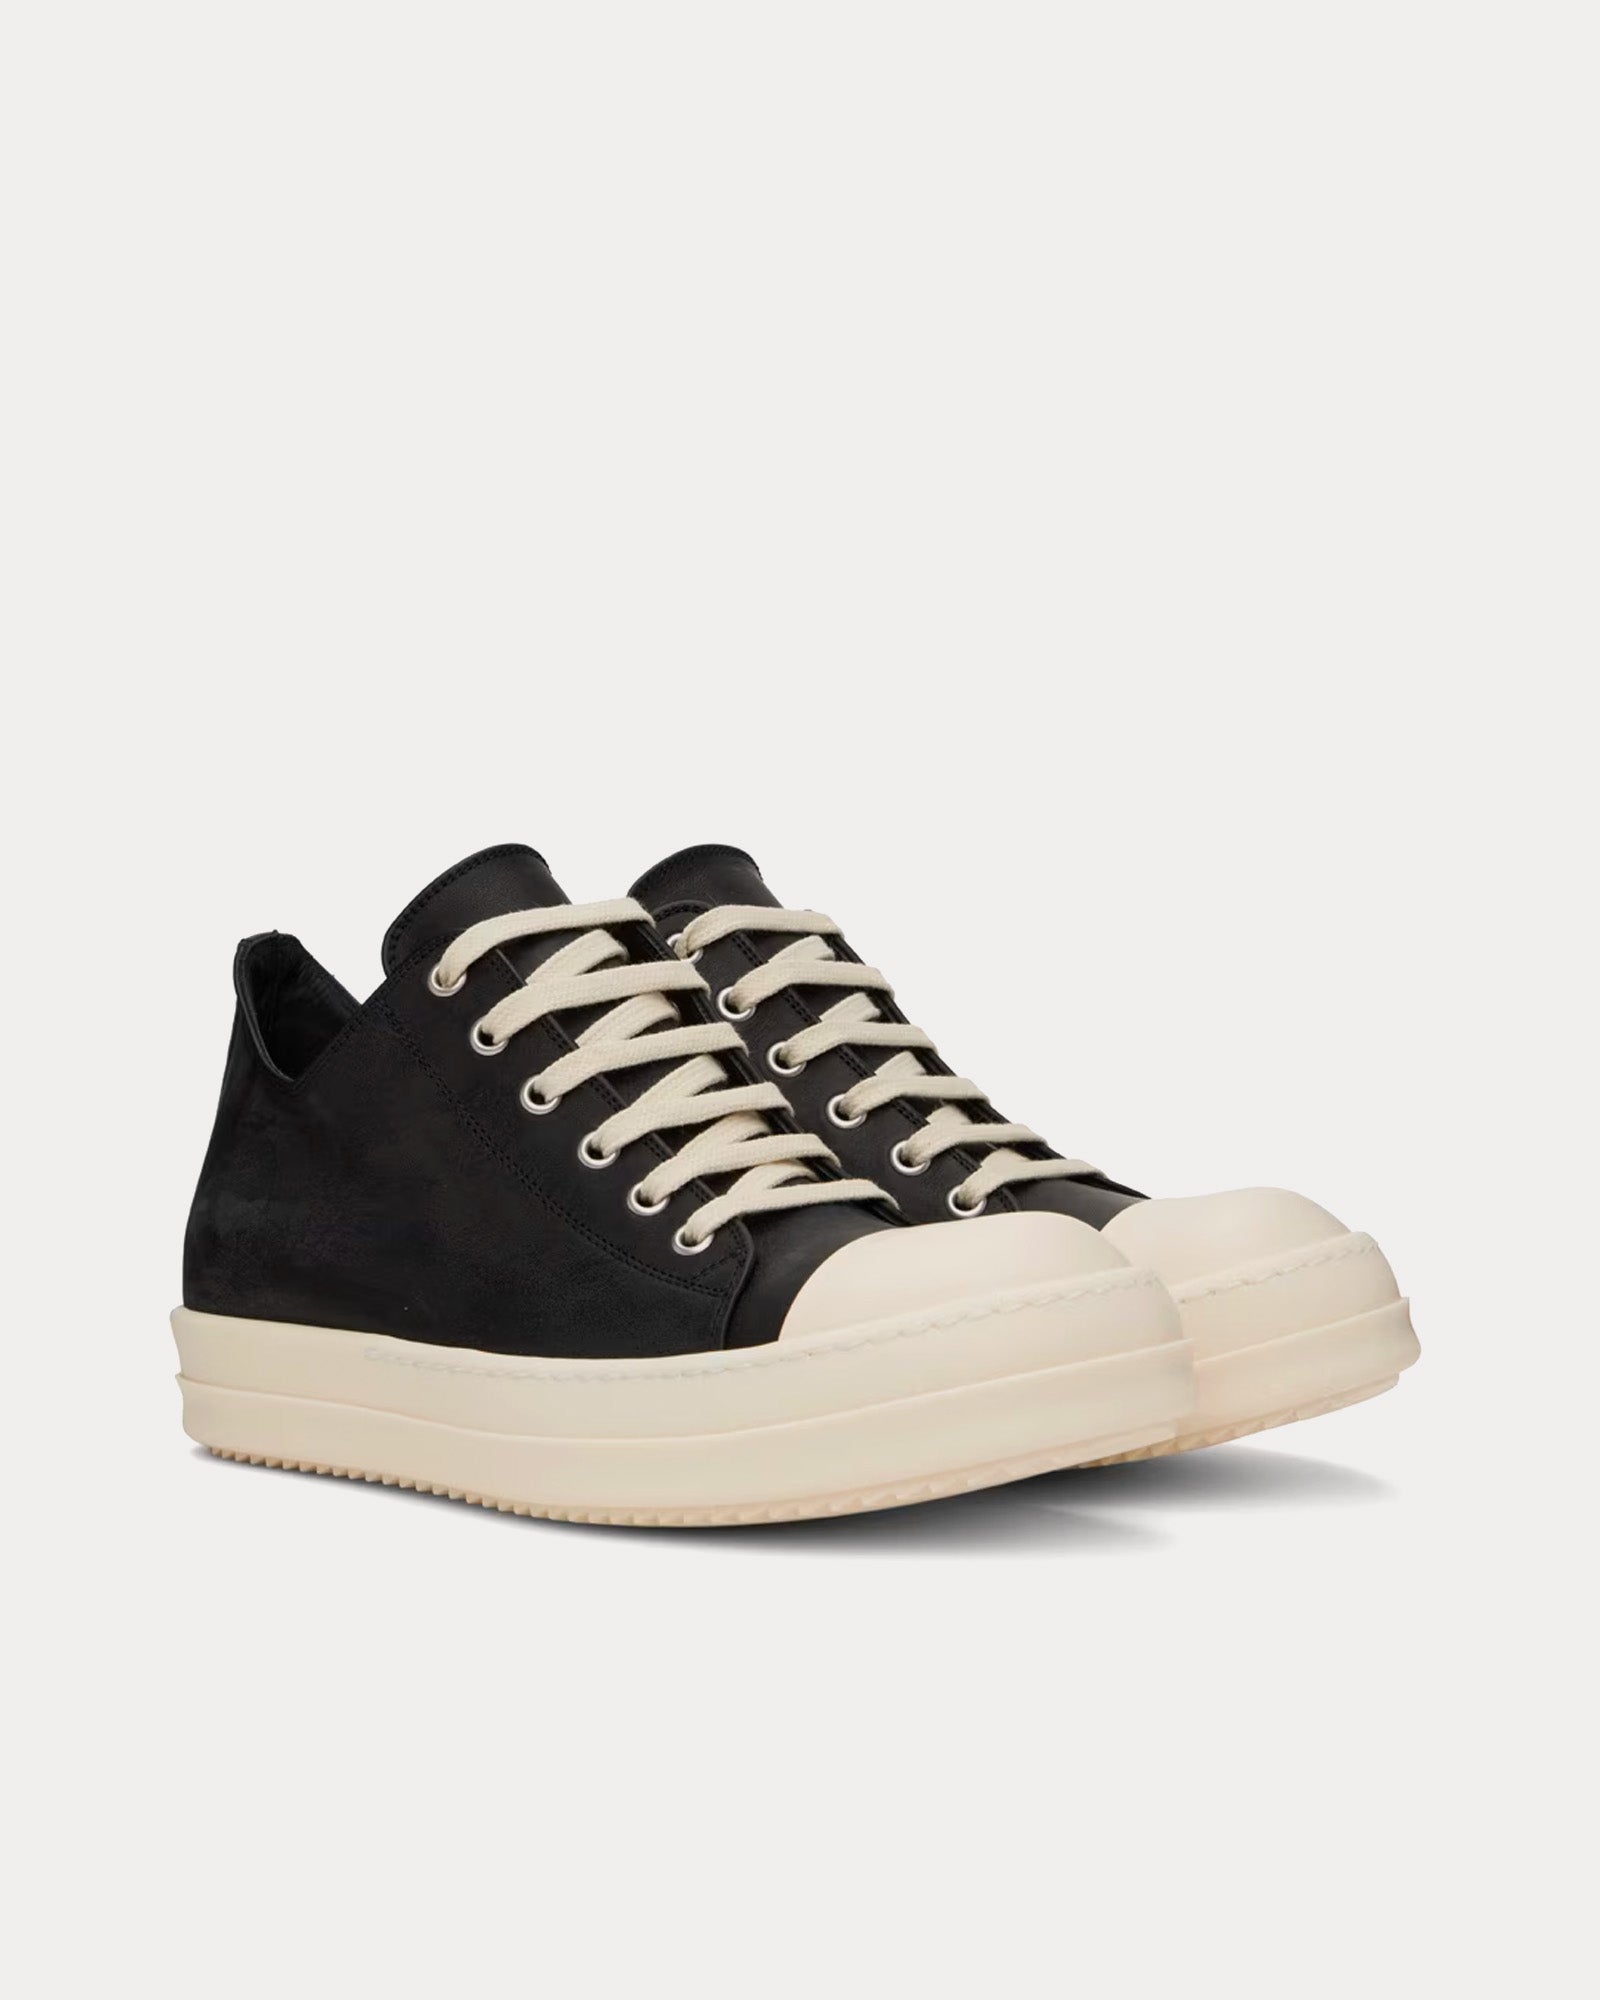 Rick Owens - Leather Black / Milk Low Top Sneakers